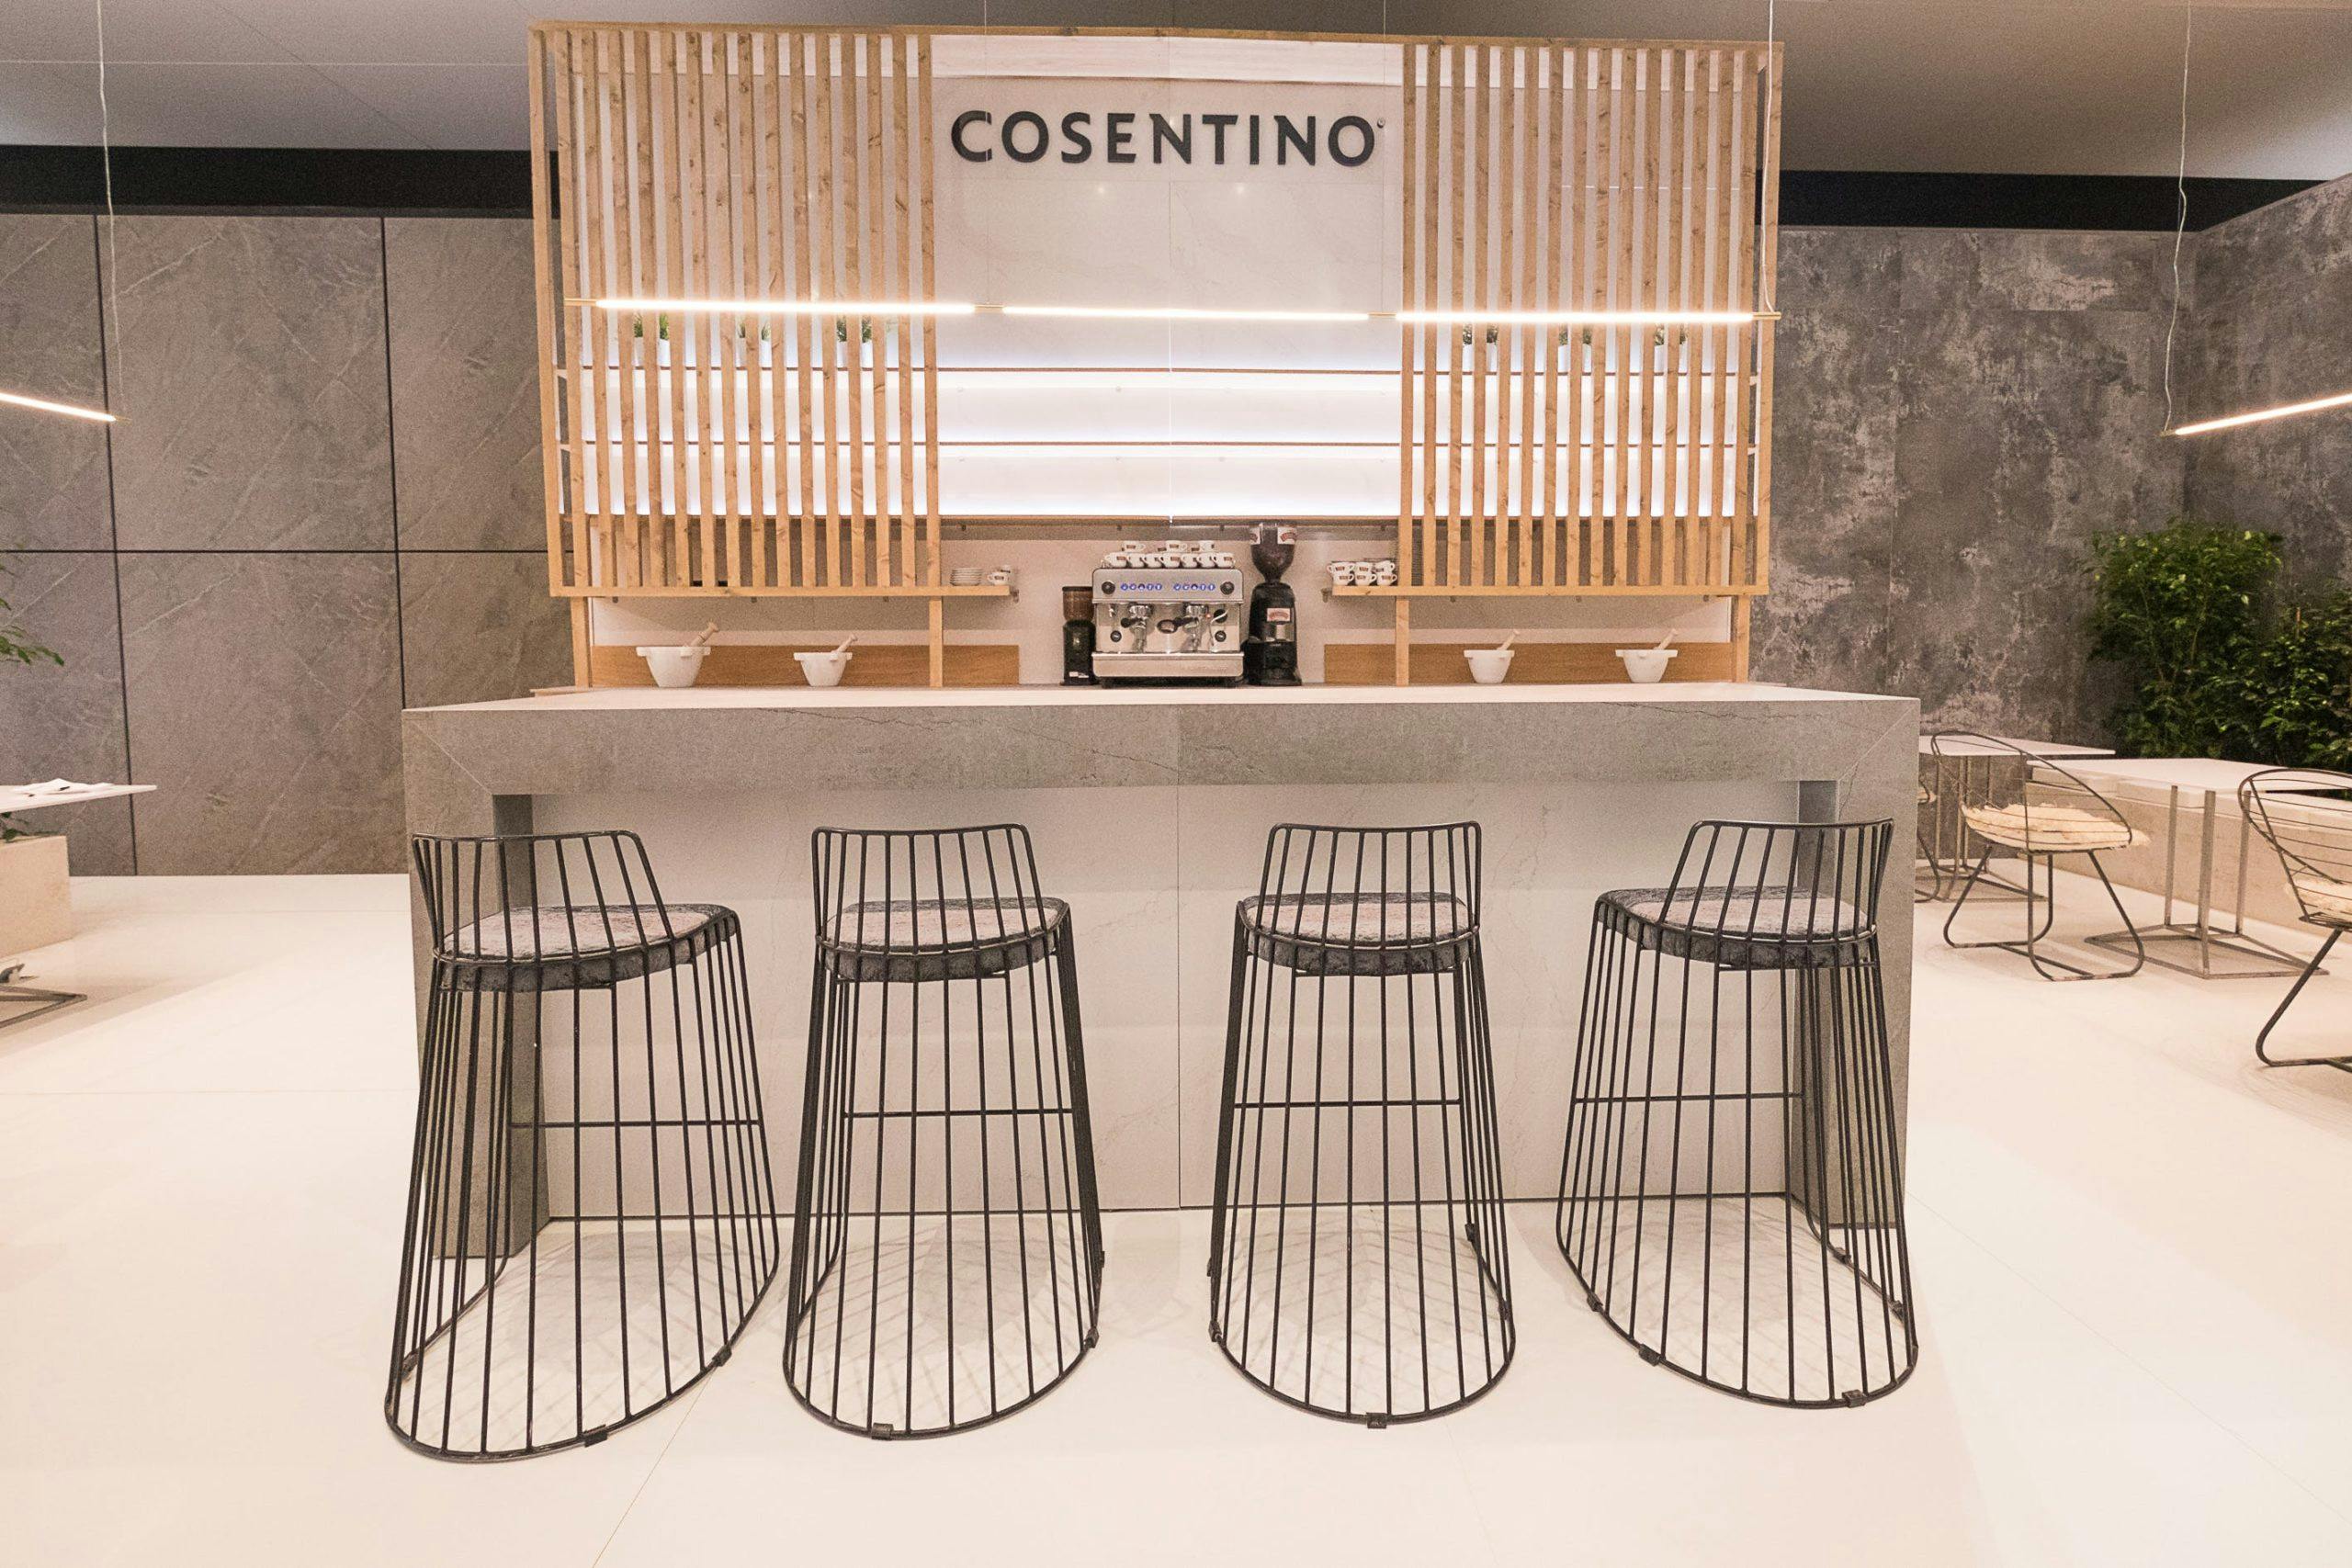 Image of Cosentino stand Salone del Mobile 13 2 scaled.jpg?auto=format%2Ccompress&ixlib=php 3.3 in De Cosentino groep op de Internationale Salone del Bagno van Milaan 2018 - Cosentino